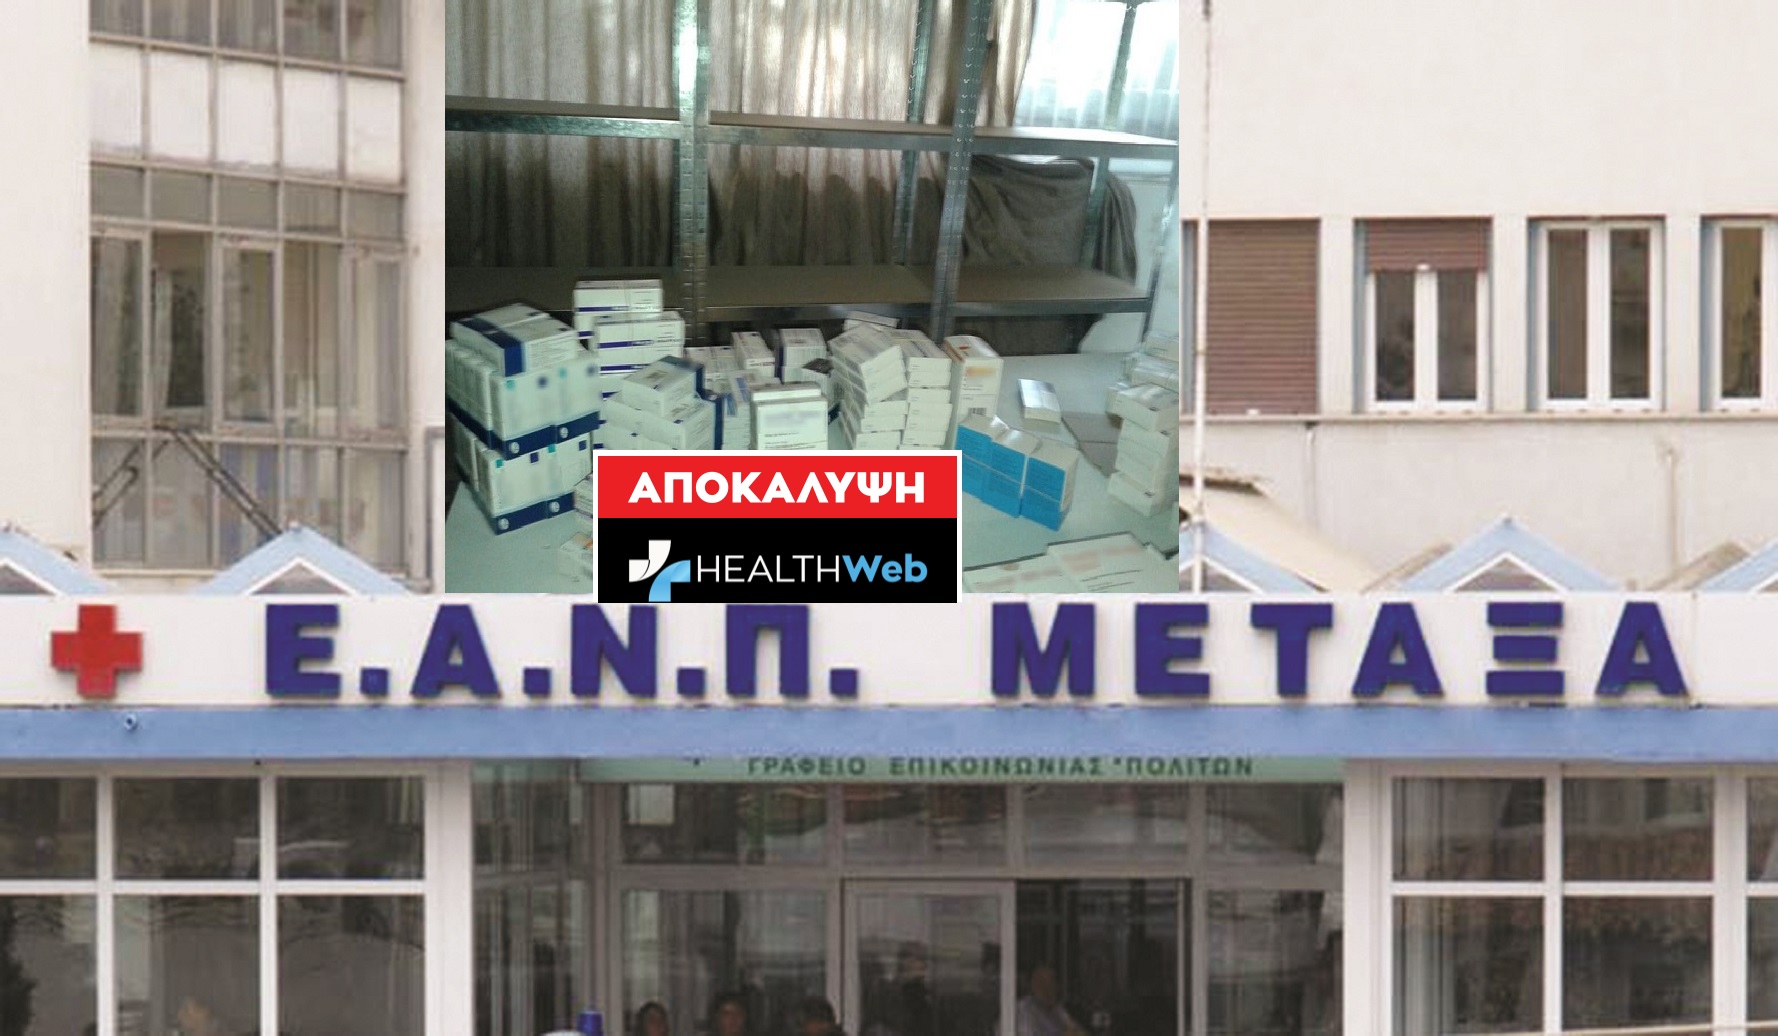 Πλήρης επιβεβαίωση του Healthweb.gr!ΑΠΟΚΛΕΙΣΤΙΚΟ: Παράνομα φάρμακα & διαγραφές στο Νοσοκομείο ‘’ ΜΕΤΑΞΑ”